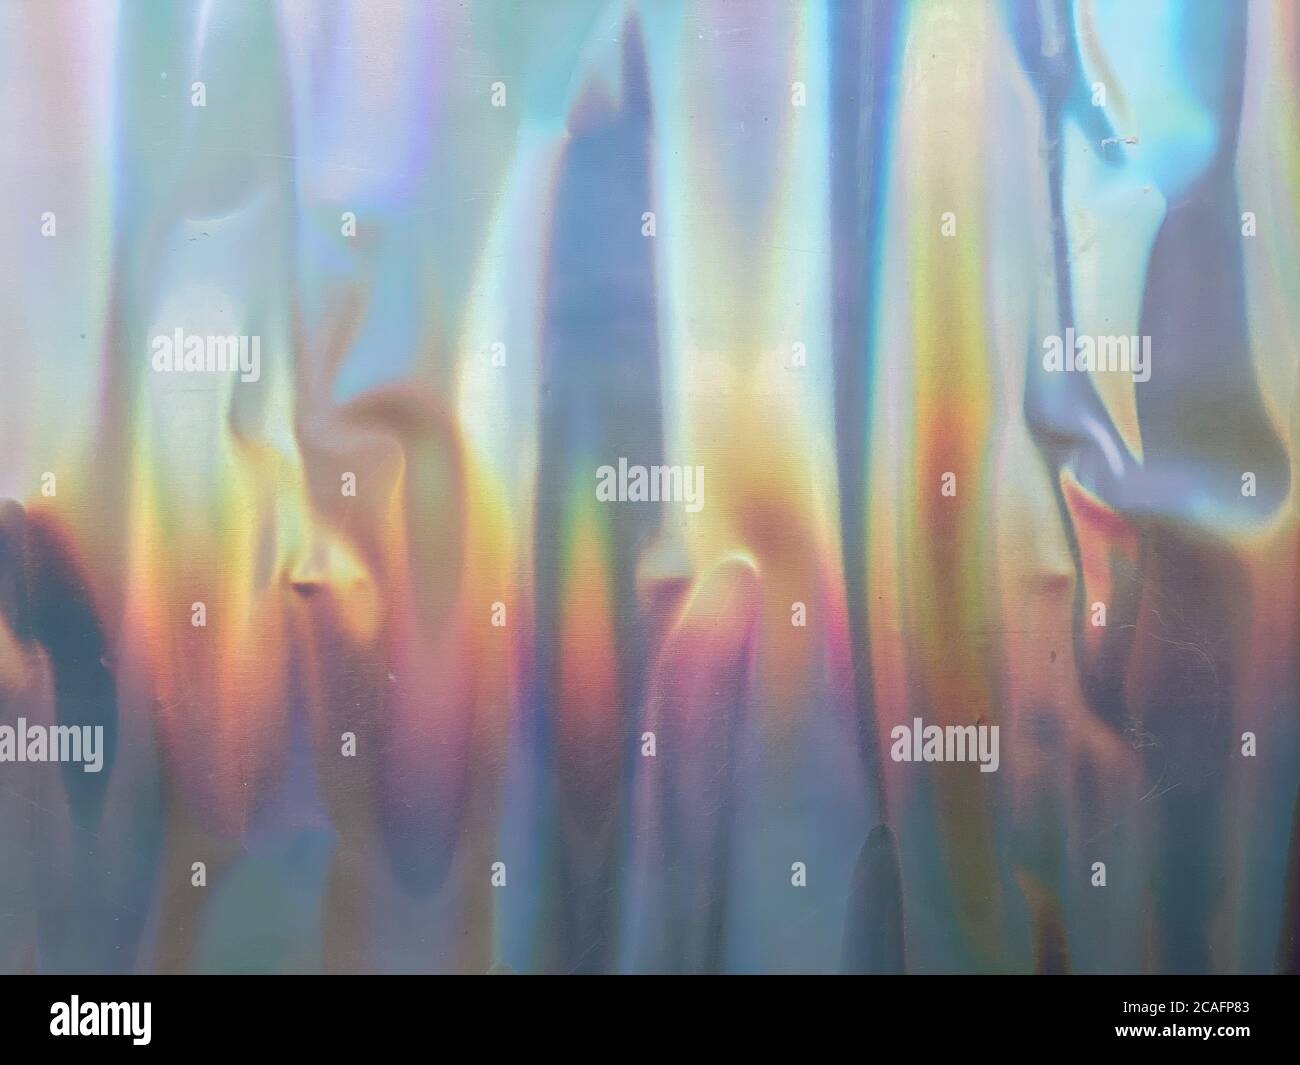 Holographische rainbow Folie Zusammenfassung Hintergrund Stockfoto